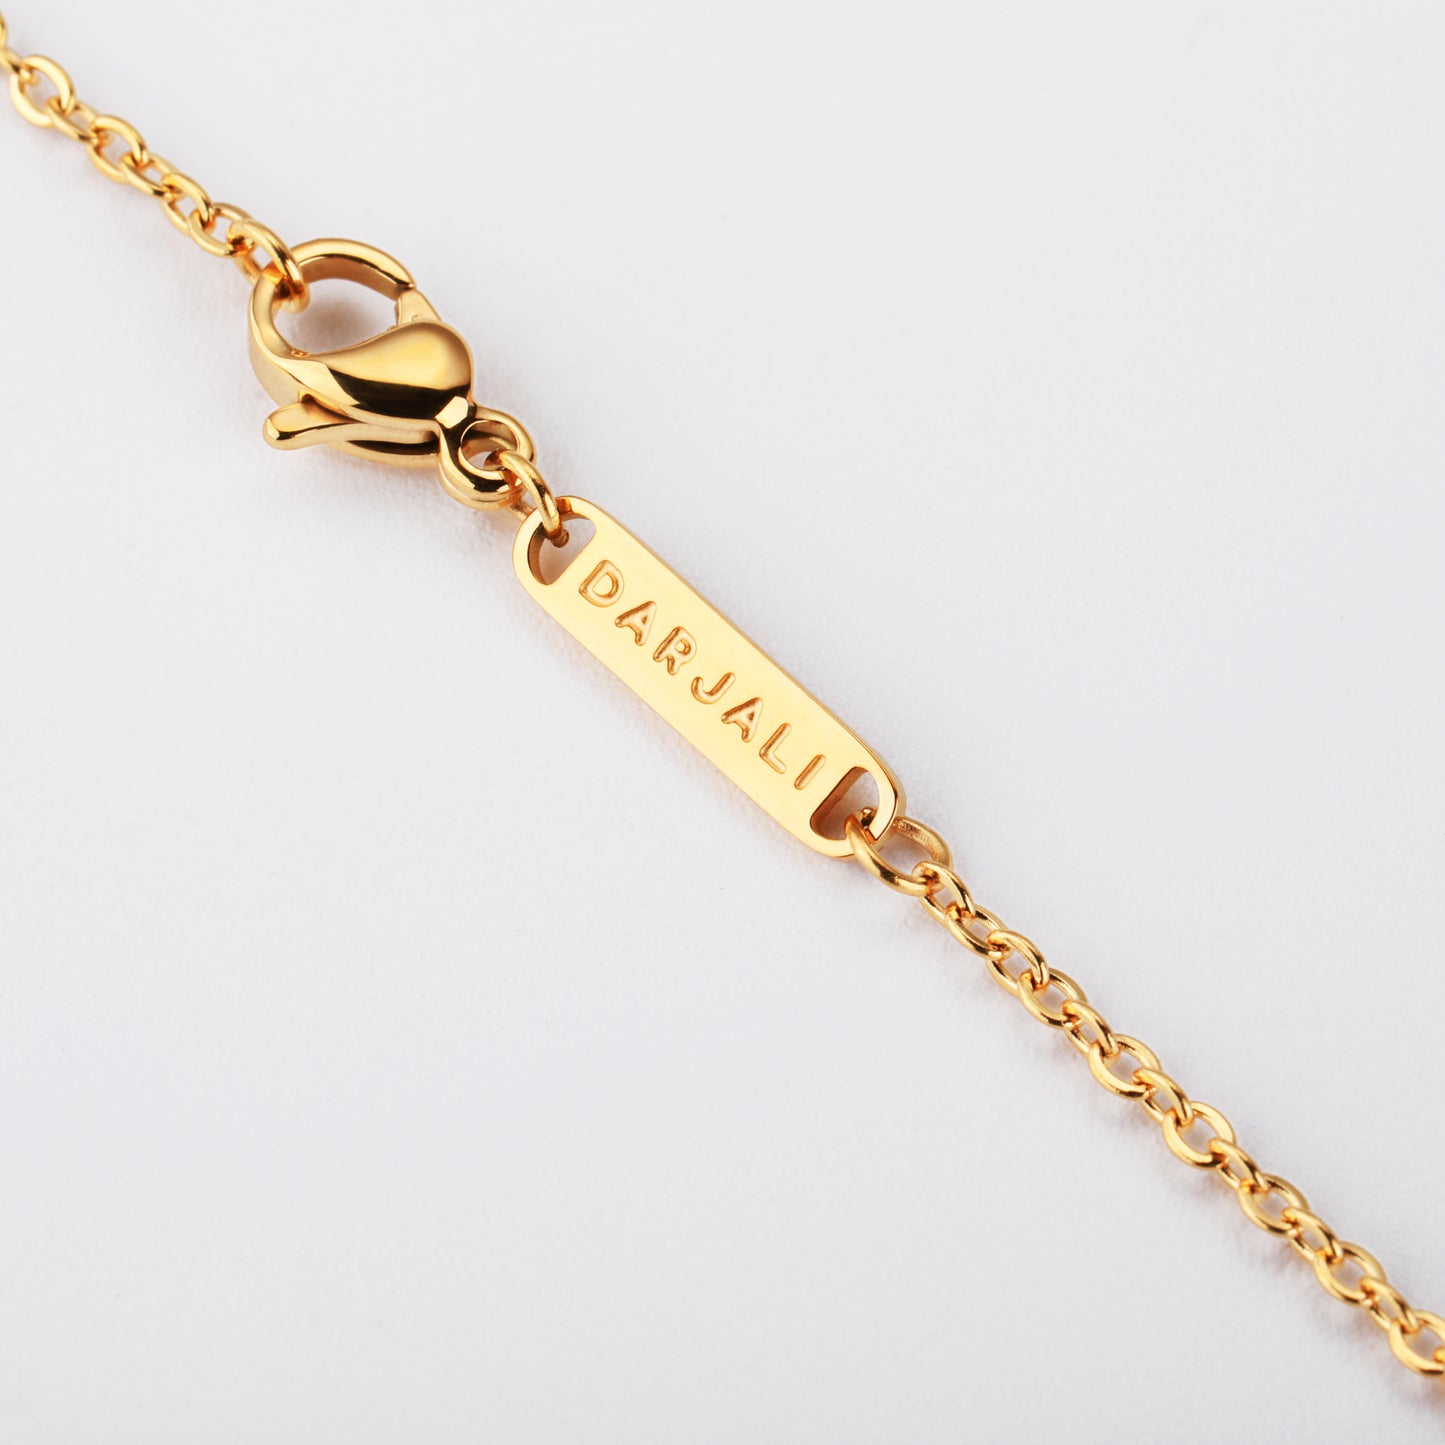 Darjali Jewelry Radiant Star Necklace 18K Gold Chain